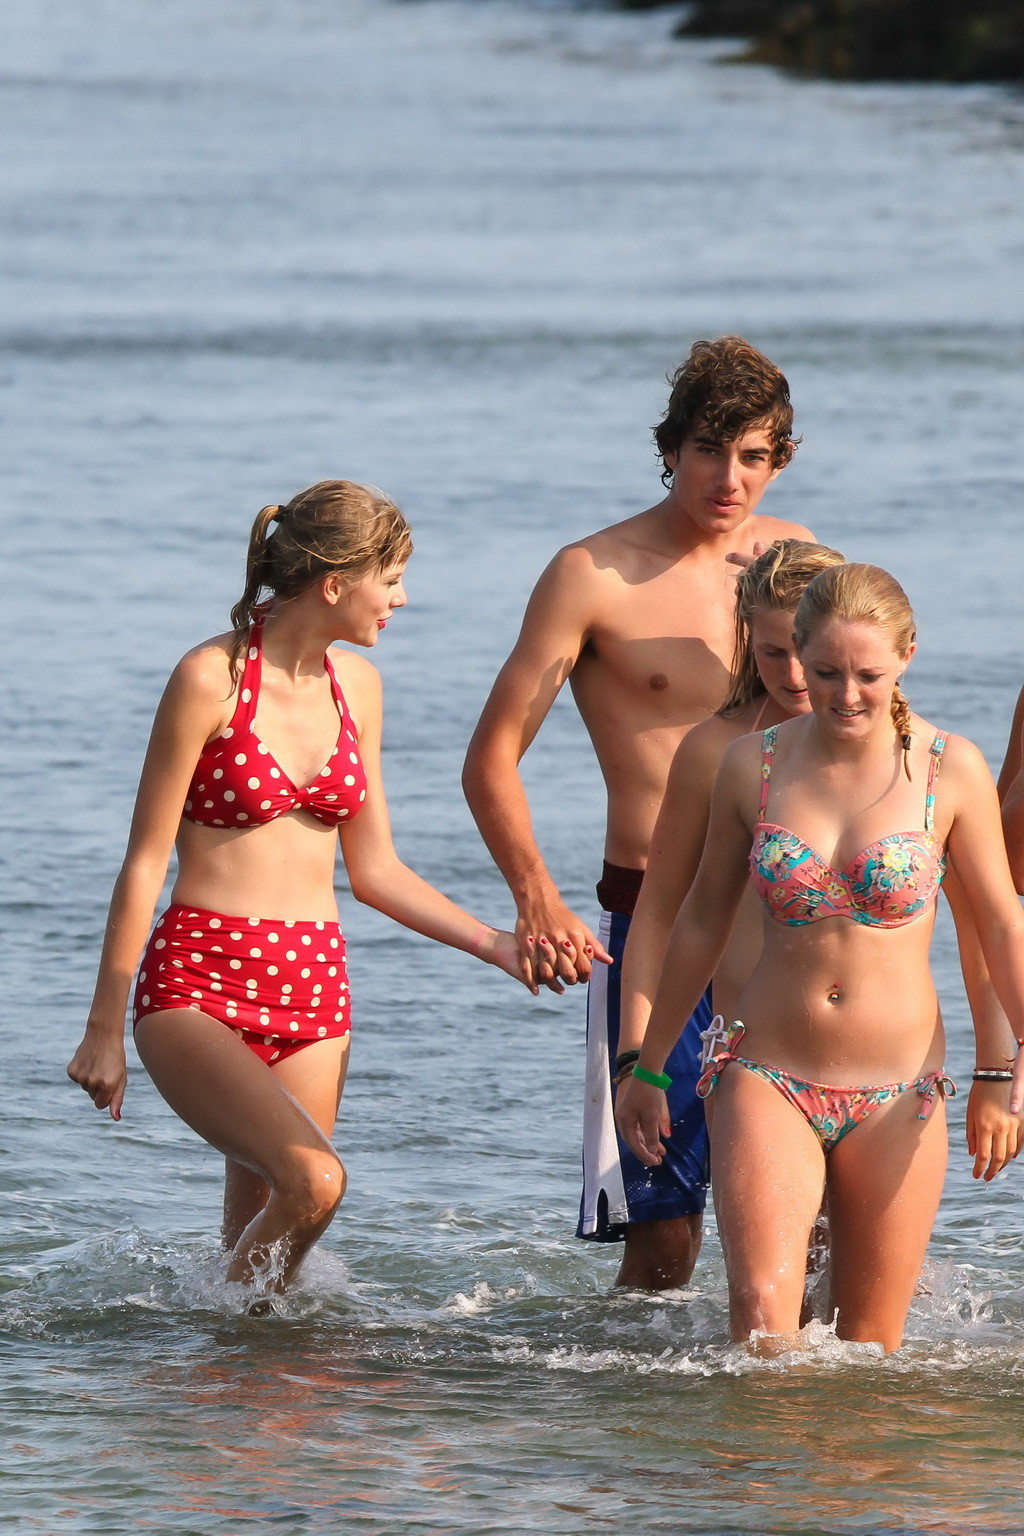 Taylor Swift shows her hot body wearing polka dot bikini at a beach in Cape Cod #75254273